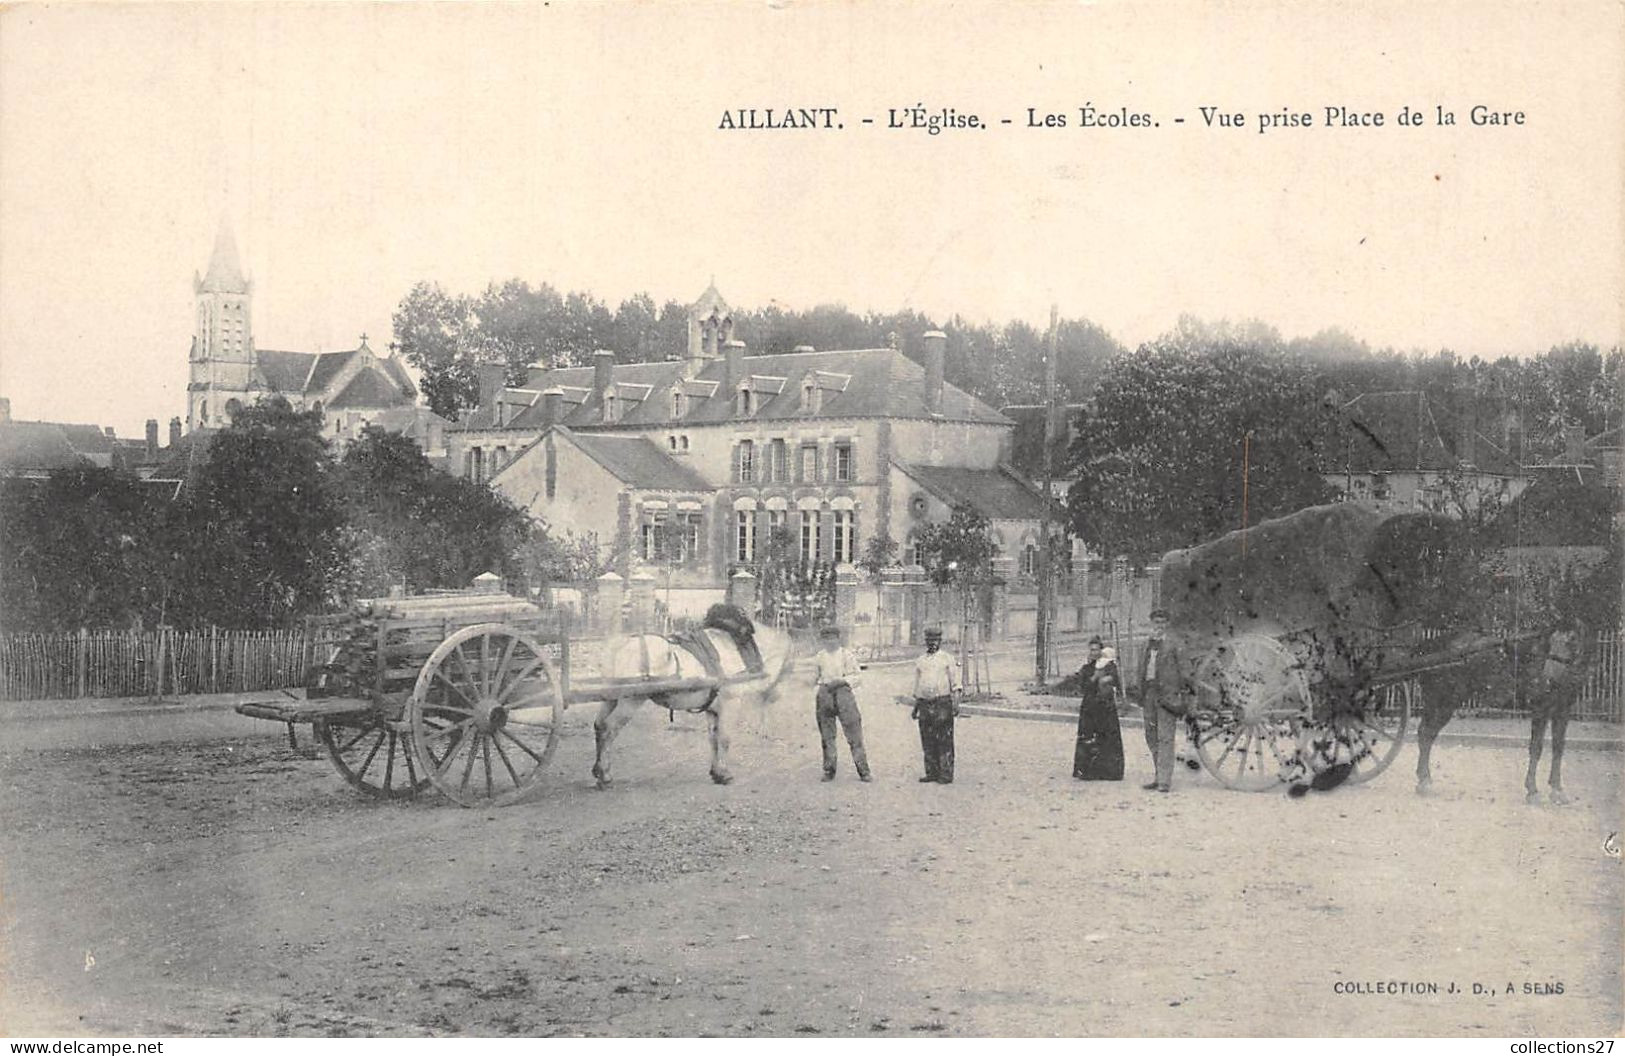 89-AILLANT- L'EGLISE , LES ECOLES, VUE PRISE PLACE DE LA GARE - Aillant Sur Tholon